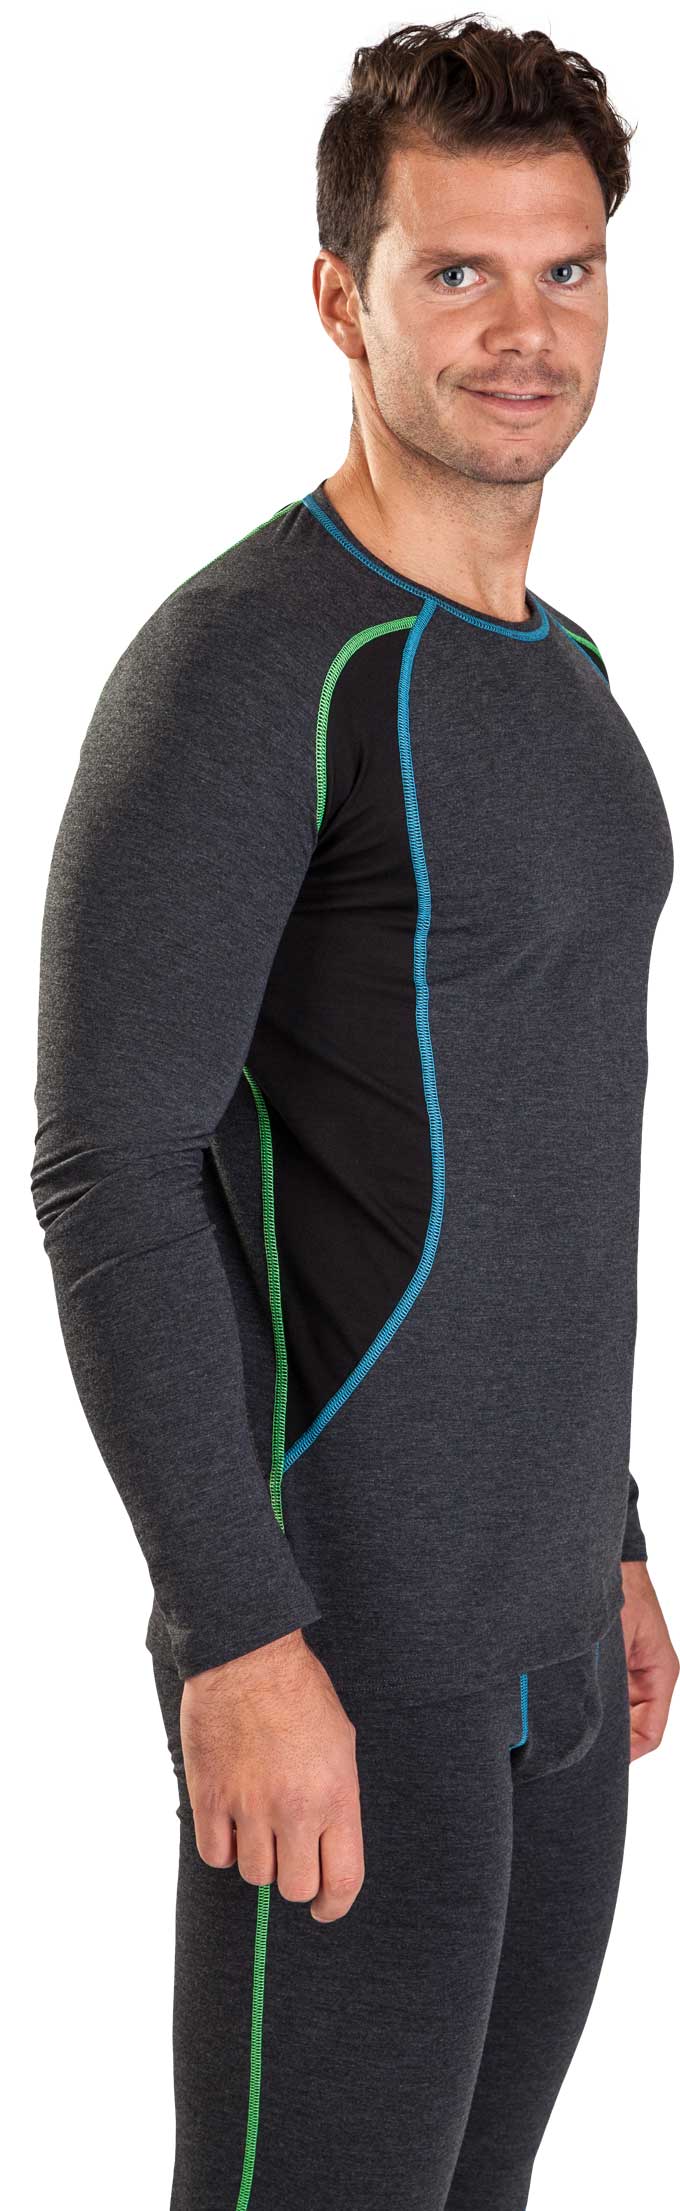 COOLMAX UNDERPANTS MEN'S - Men's functional underwear